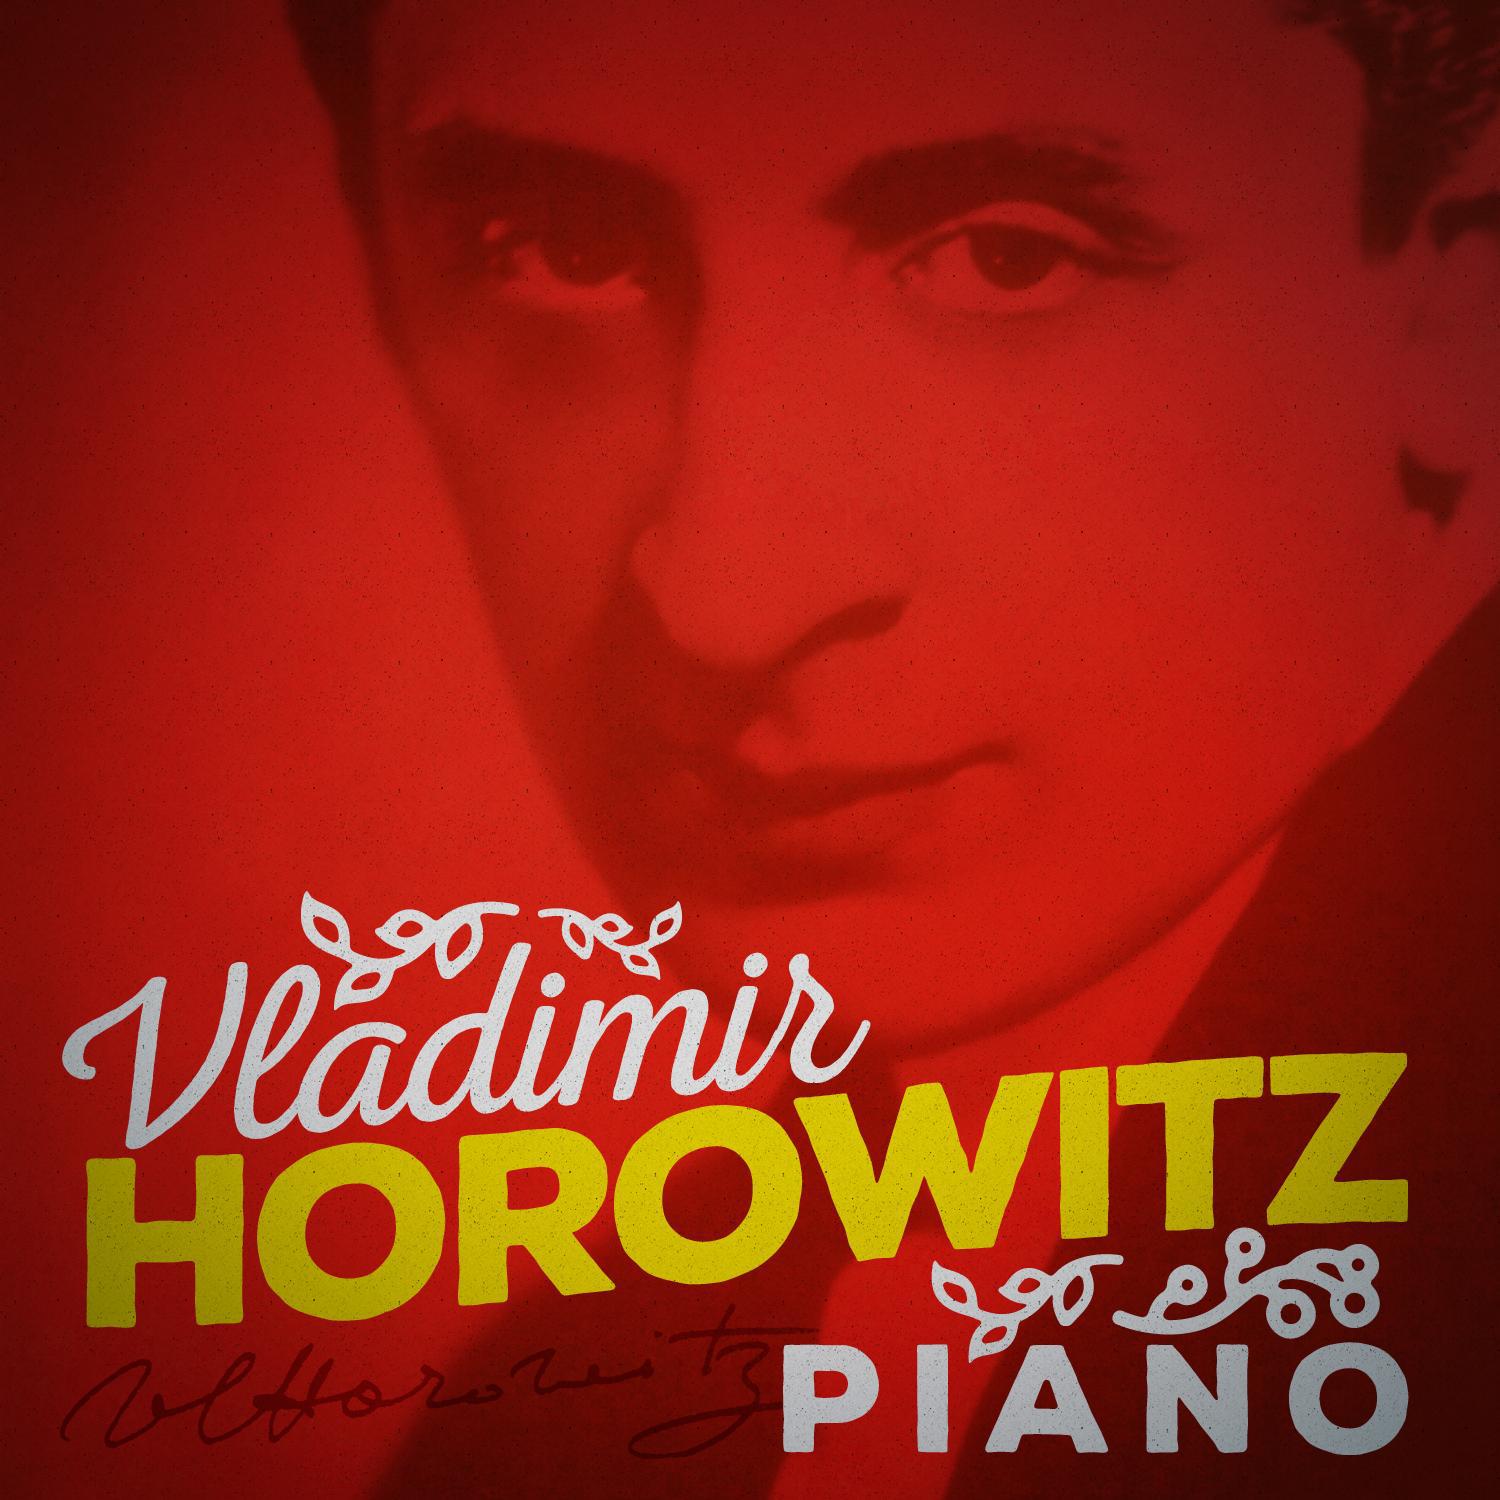 Vladimir Horowitz: Piano专辑